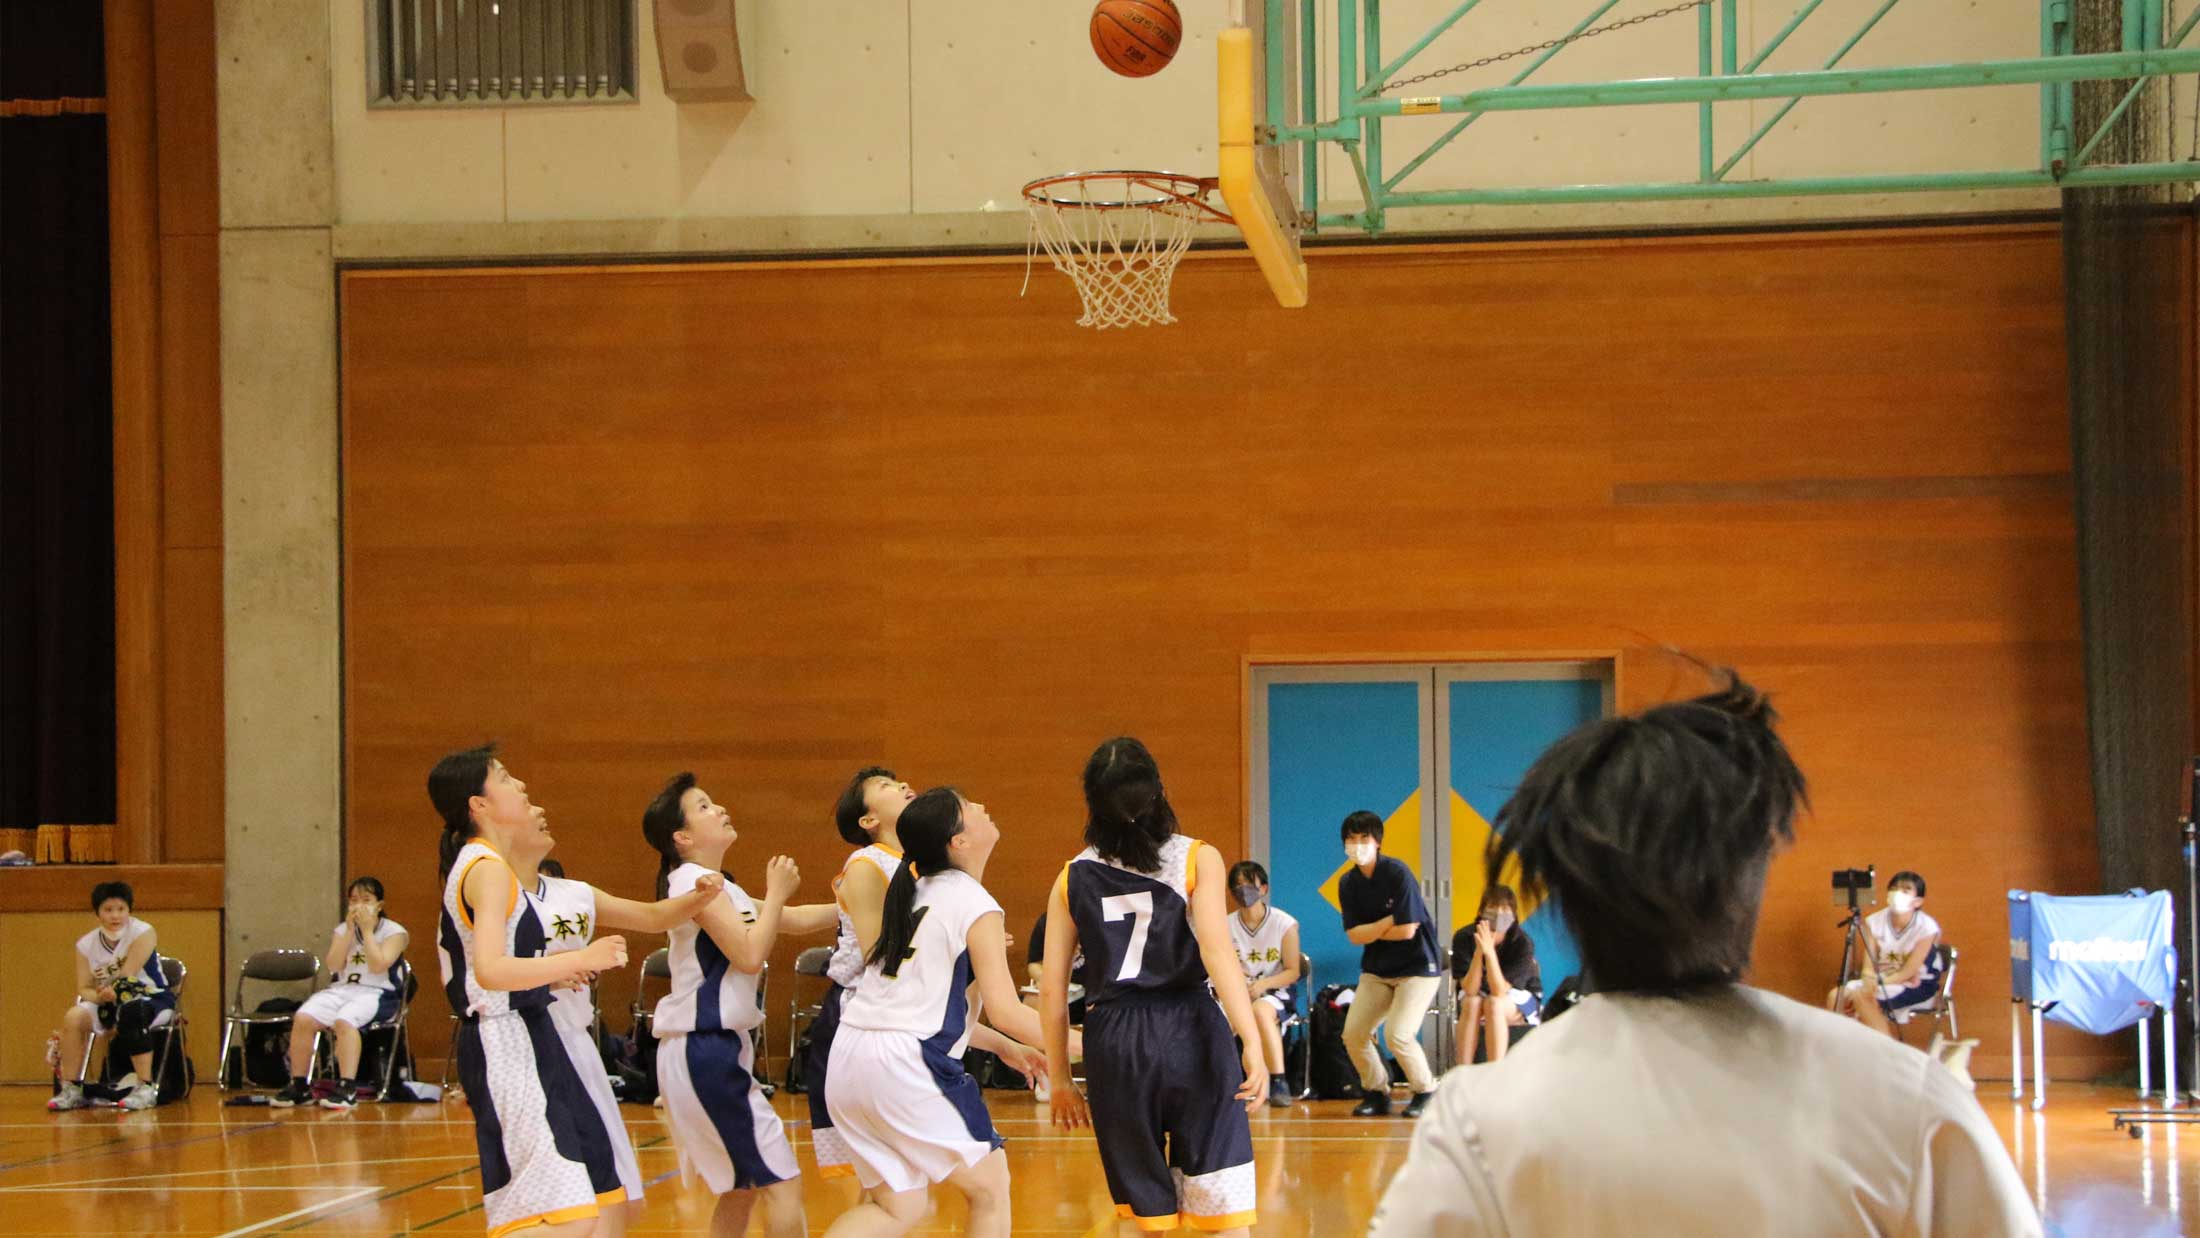 basketball-2